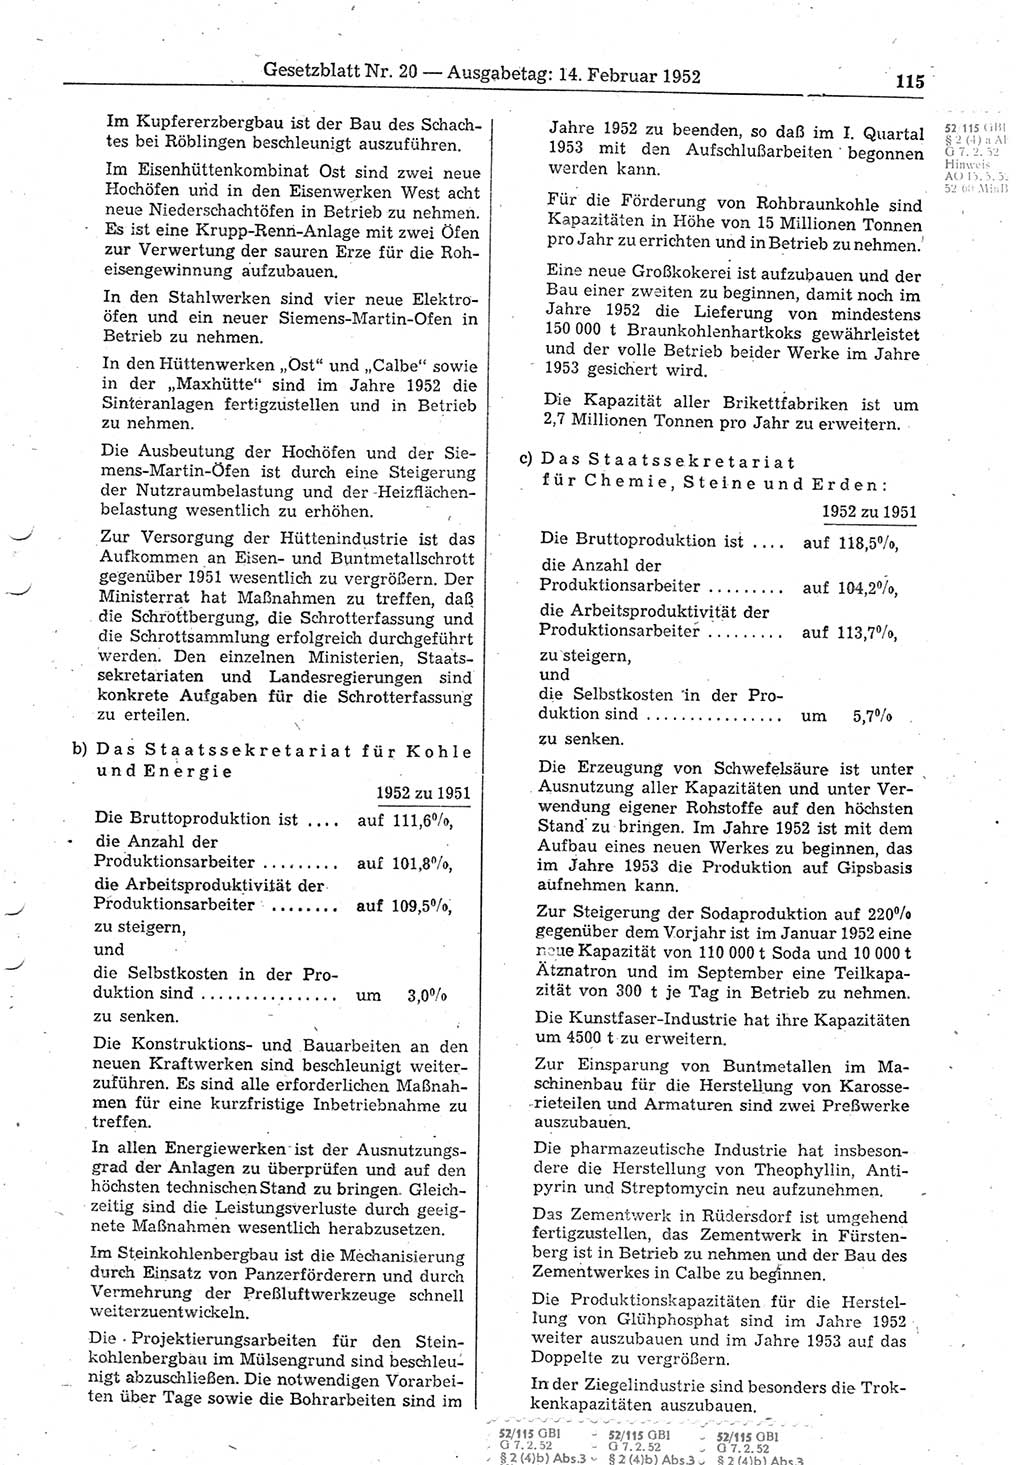 Gesetzblatt (GBl.) der Deutschen Demokratischen Republik (DDR) 1952, Seite 115 (GBl. DDR 1952, S. 115)